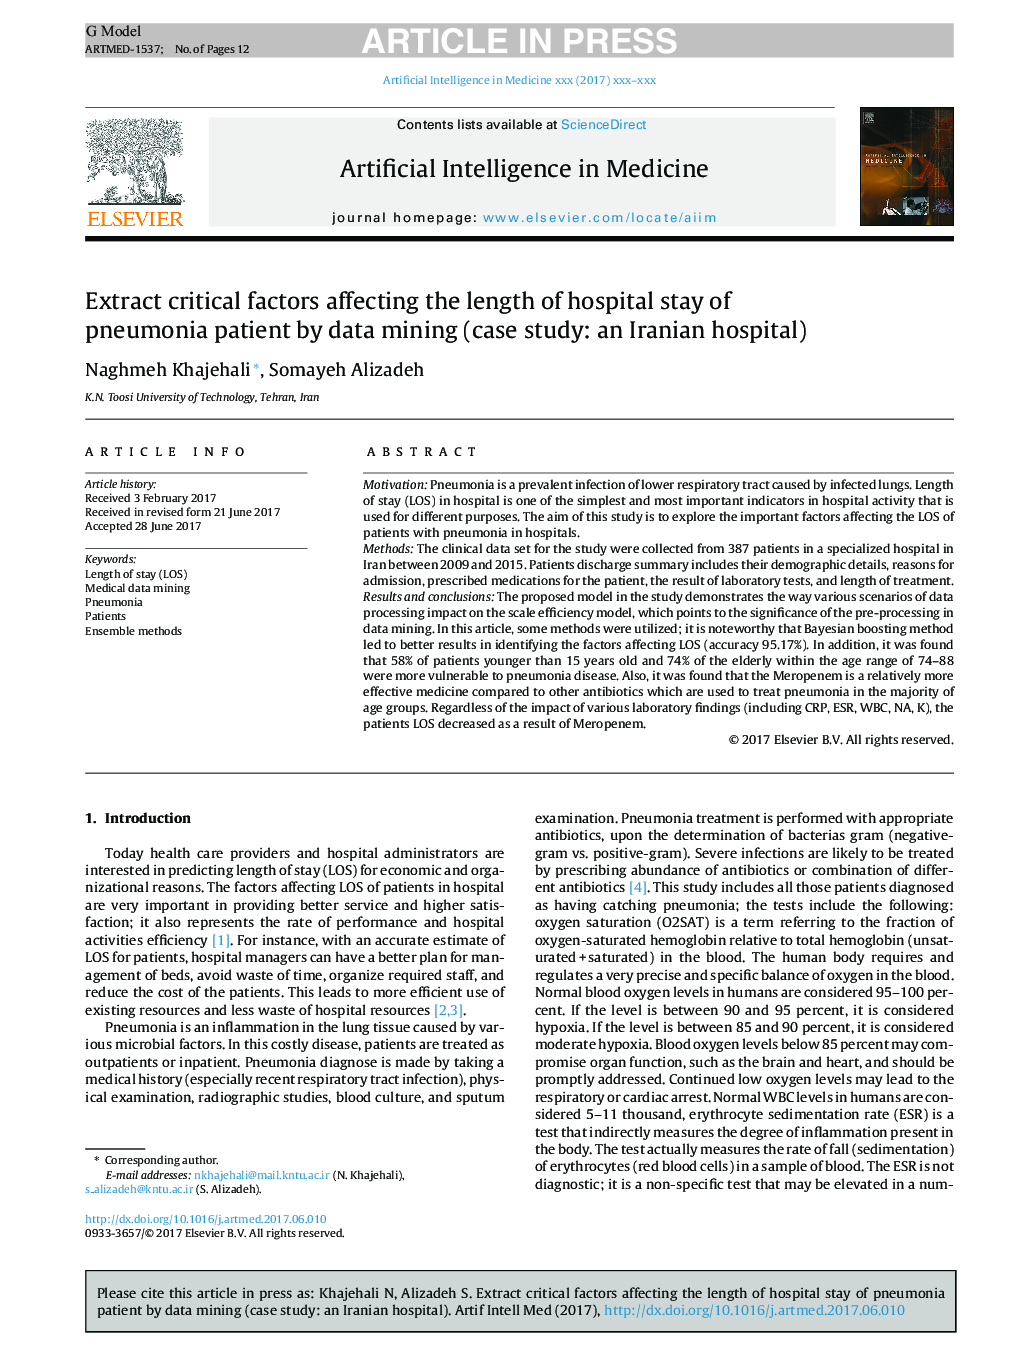 استخراج عوامل مؤثر بر طول مدت بستری بیمار مبتلا به پنومونی با استفاده از داده کاوی (مطالعه موردی: بیمارستان ایرانی) 